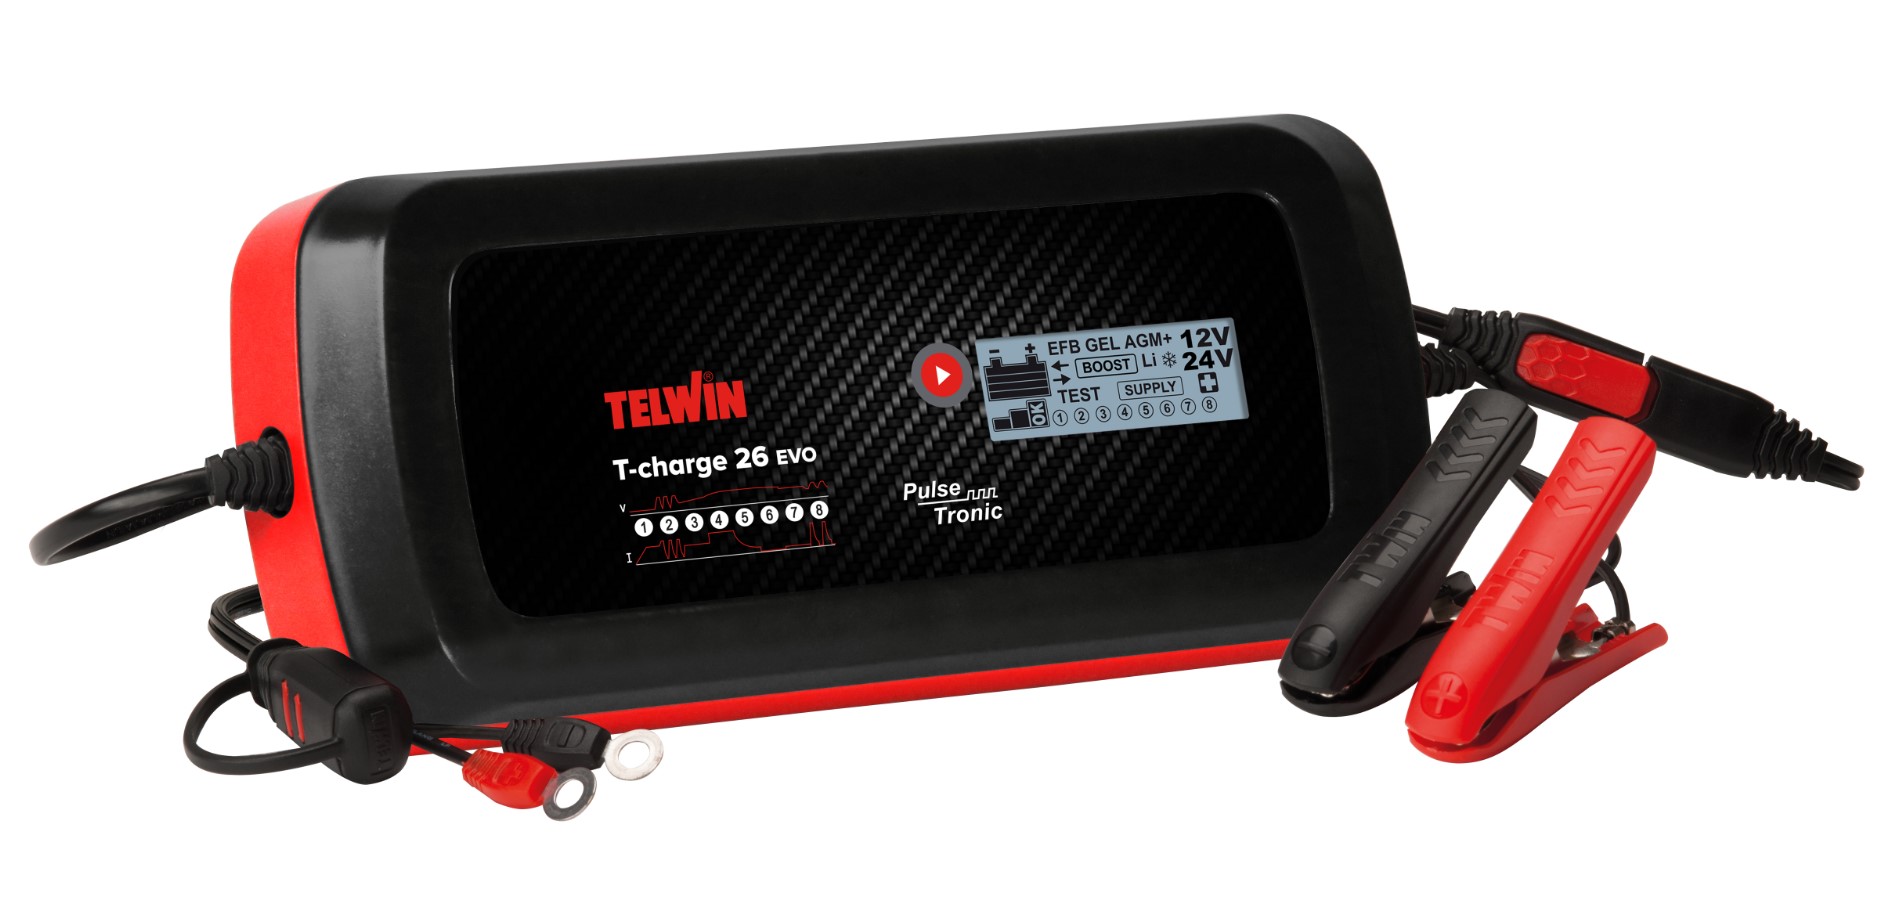 Caricabatterie e - Telwin ToolShop auto furgoni 12-24V 26 - T-Charge EVO Italia Cod. 807595 mantenitore